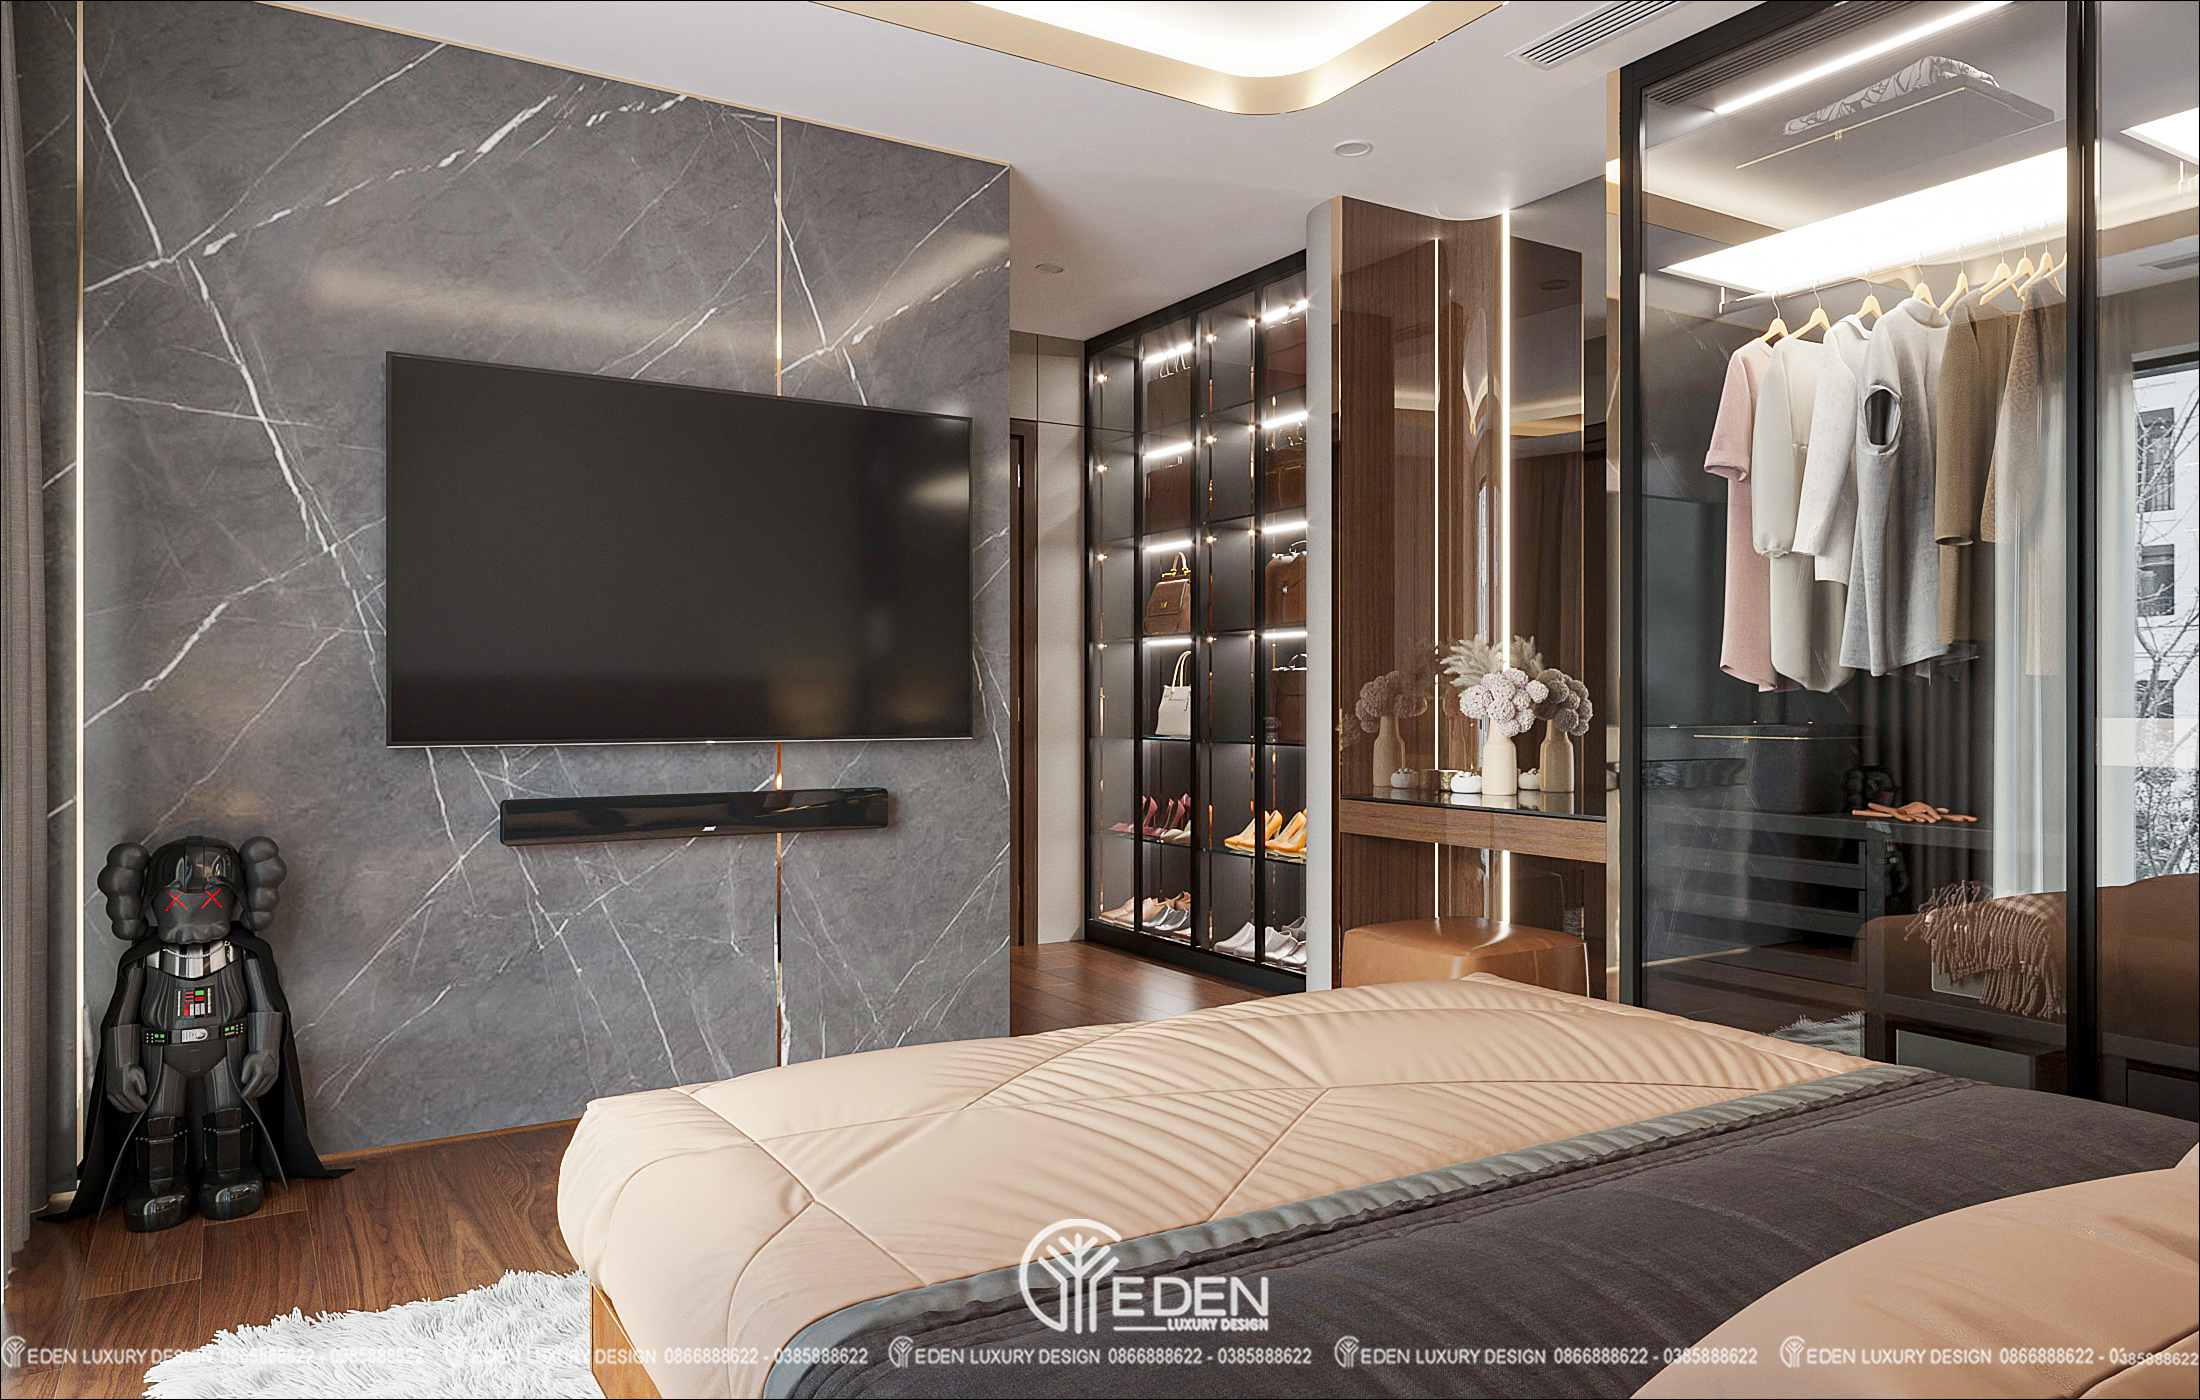 Đá ốp tường, tủ kính trượt khung đen, chỉ phào PU vàng kim...những thiết kế giản đơn nhưng nổi bật, tăng điểm nhấn cho căn phòng nhờ chất liệu mang tính morden luxury của mình.